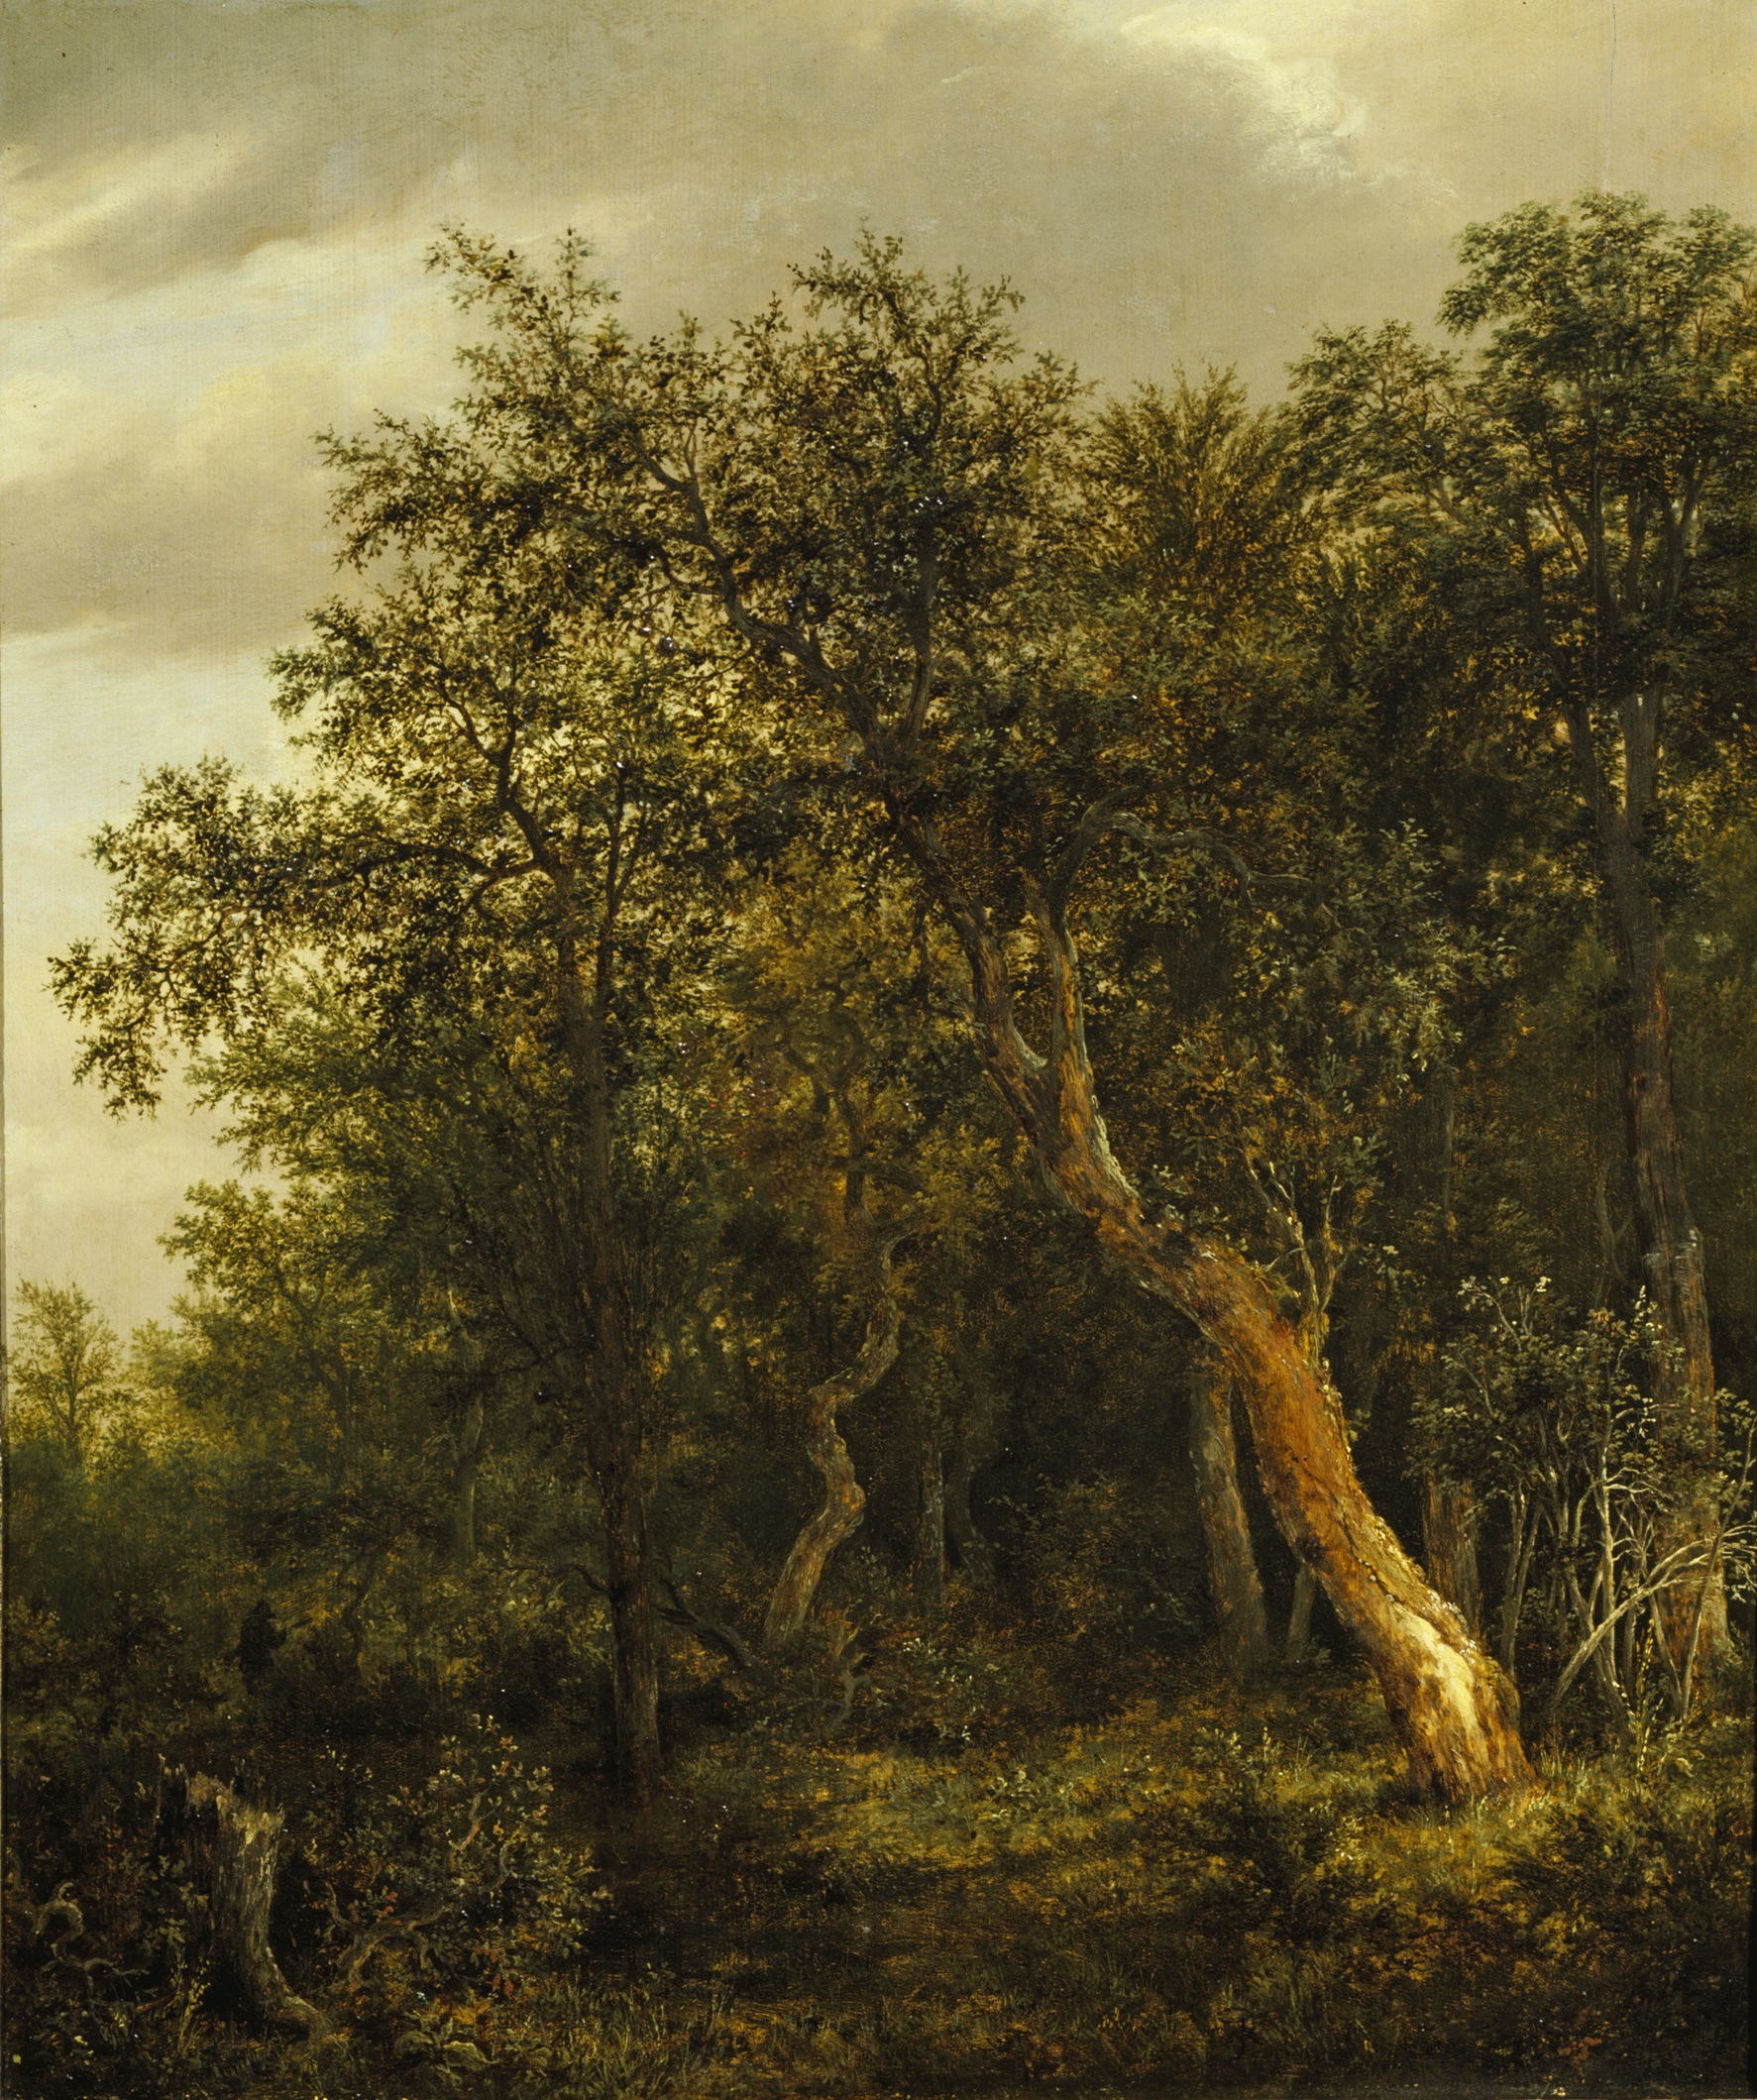 Erdei táj by Jacob van Ruisdael - 1646 körül - 57,5 x 47 cm 